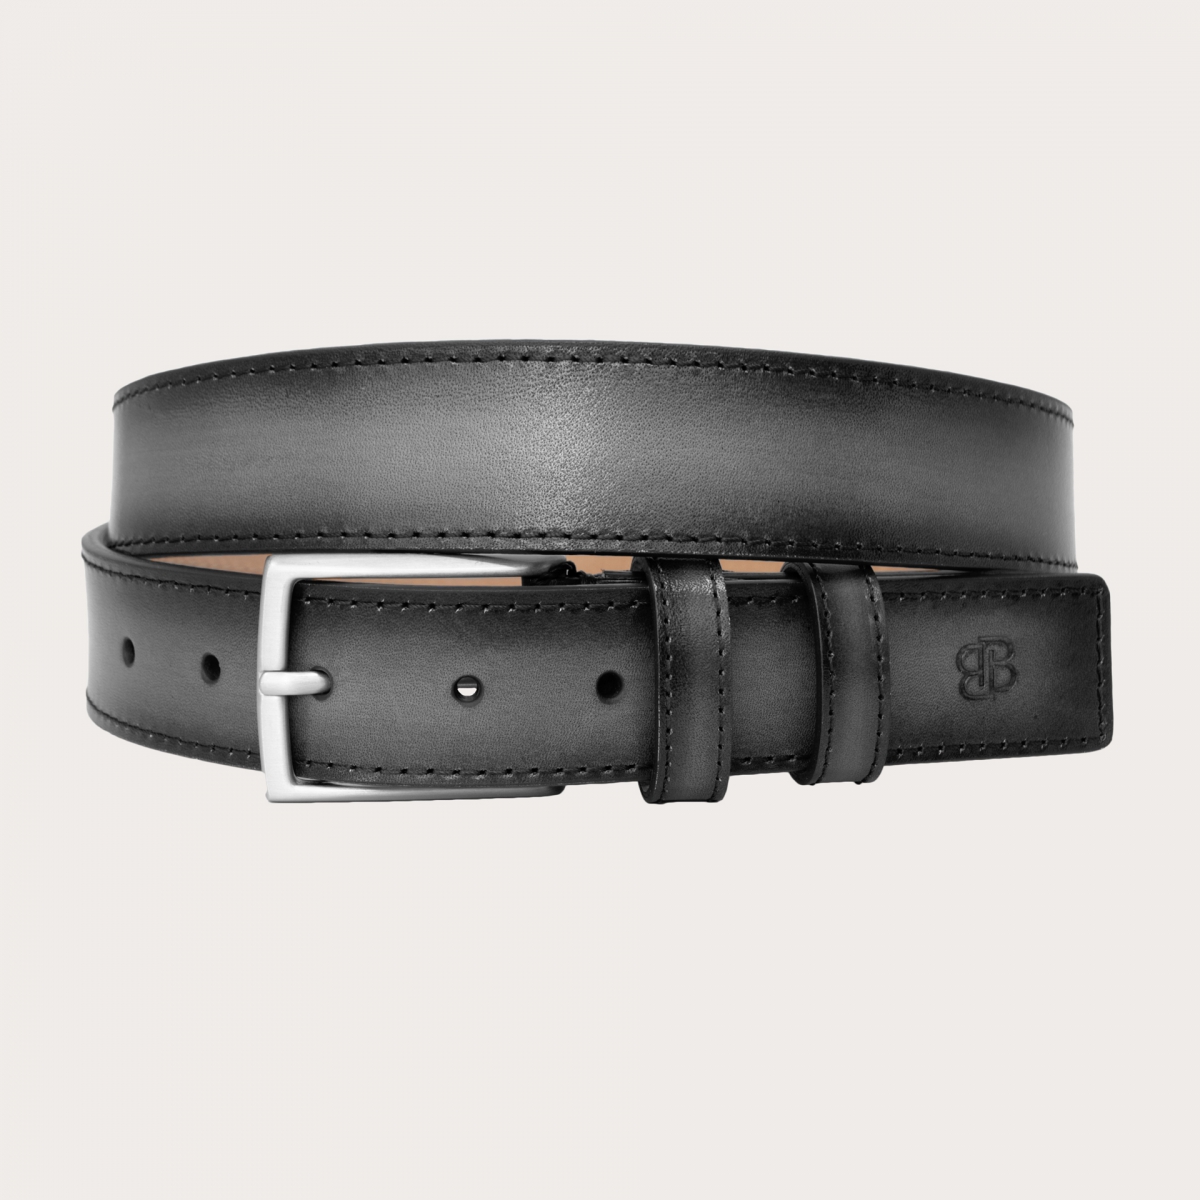 BRUCLE Cinturón plano sin níquel refinado coloreado a mano, gris degradado en negro